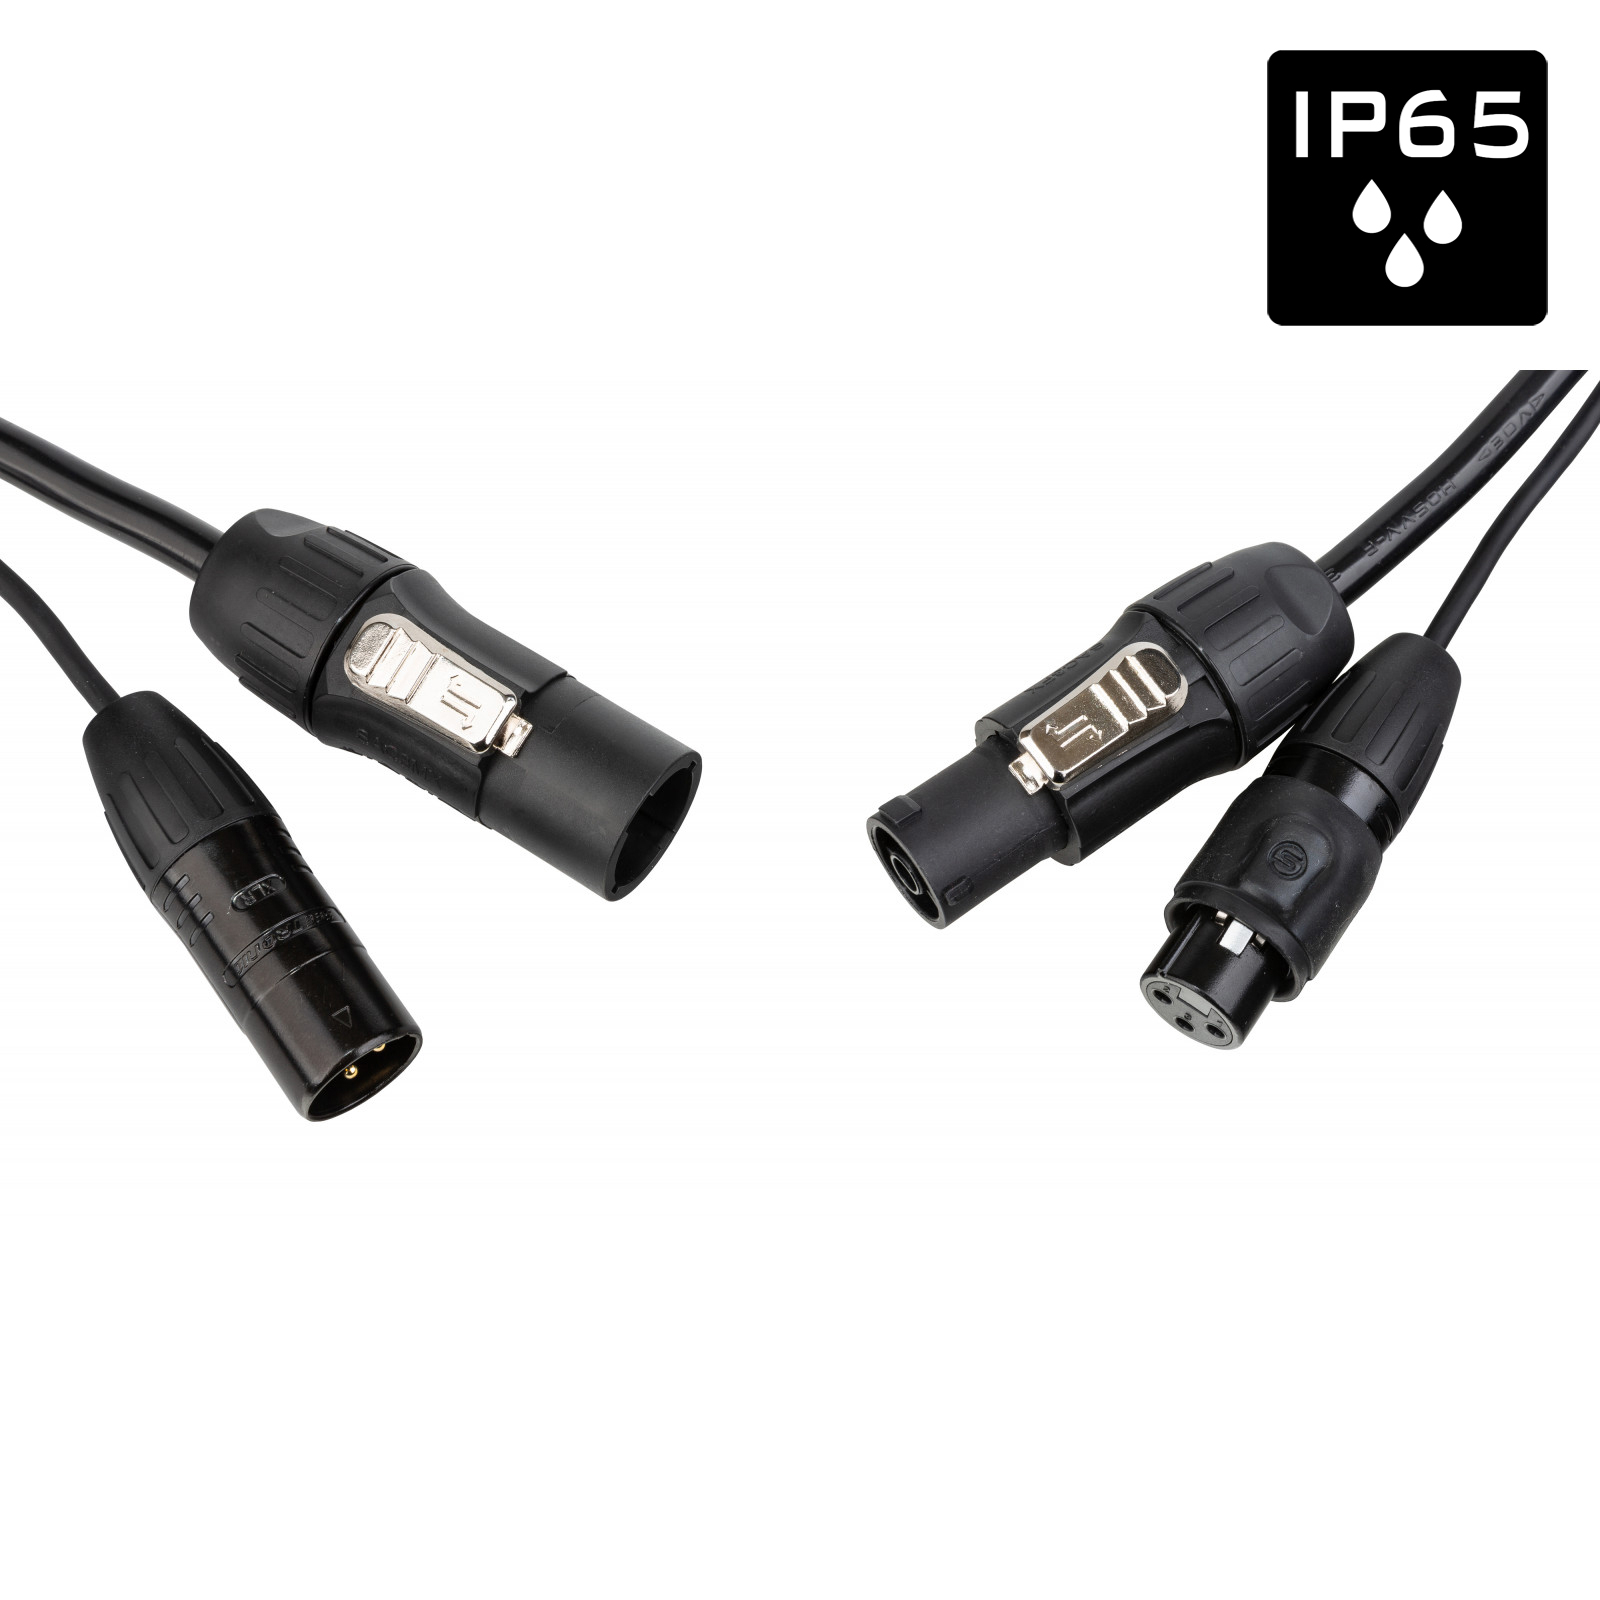 Câble IP65 avec connecteurs Seetronic XLR 3p et compatibles True1 - Longueur 1,5m